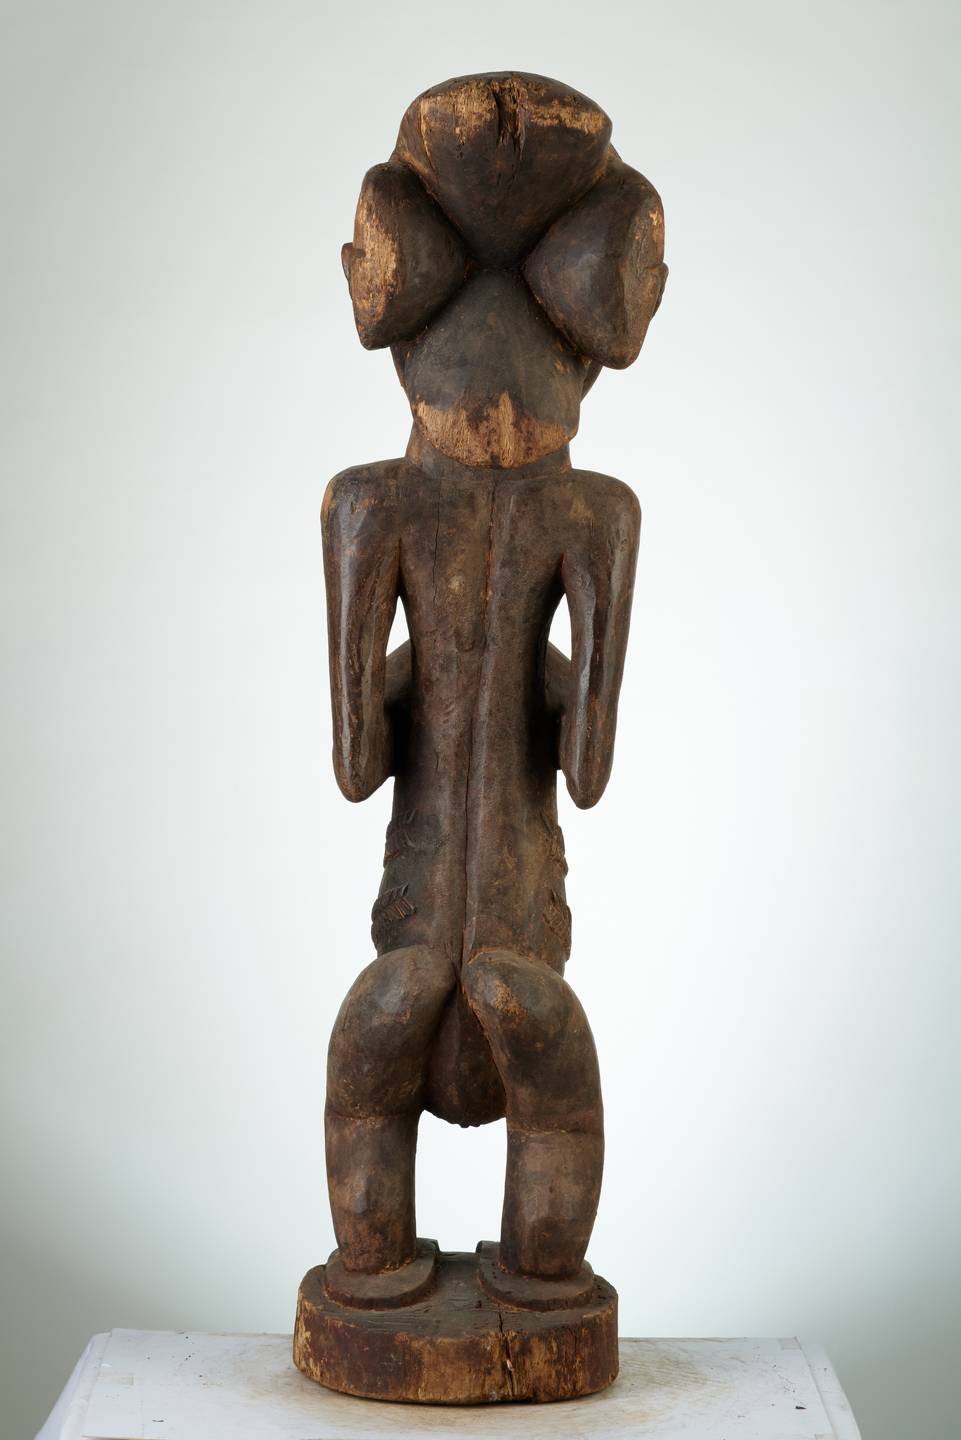 Hemba(statue)n°1989, d`afrique : R.D.C., statuette Hemba(statue)n°1989, masque ancien africain Hemba(statue)n°1989, art du R.D.C. - Art Africain, collection privées Belgique. Statue africaine de la tribu des Hemba(statue)n°1989, provenant du R.D.C., 1989:Statue Hemba d